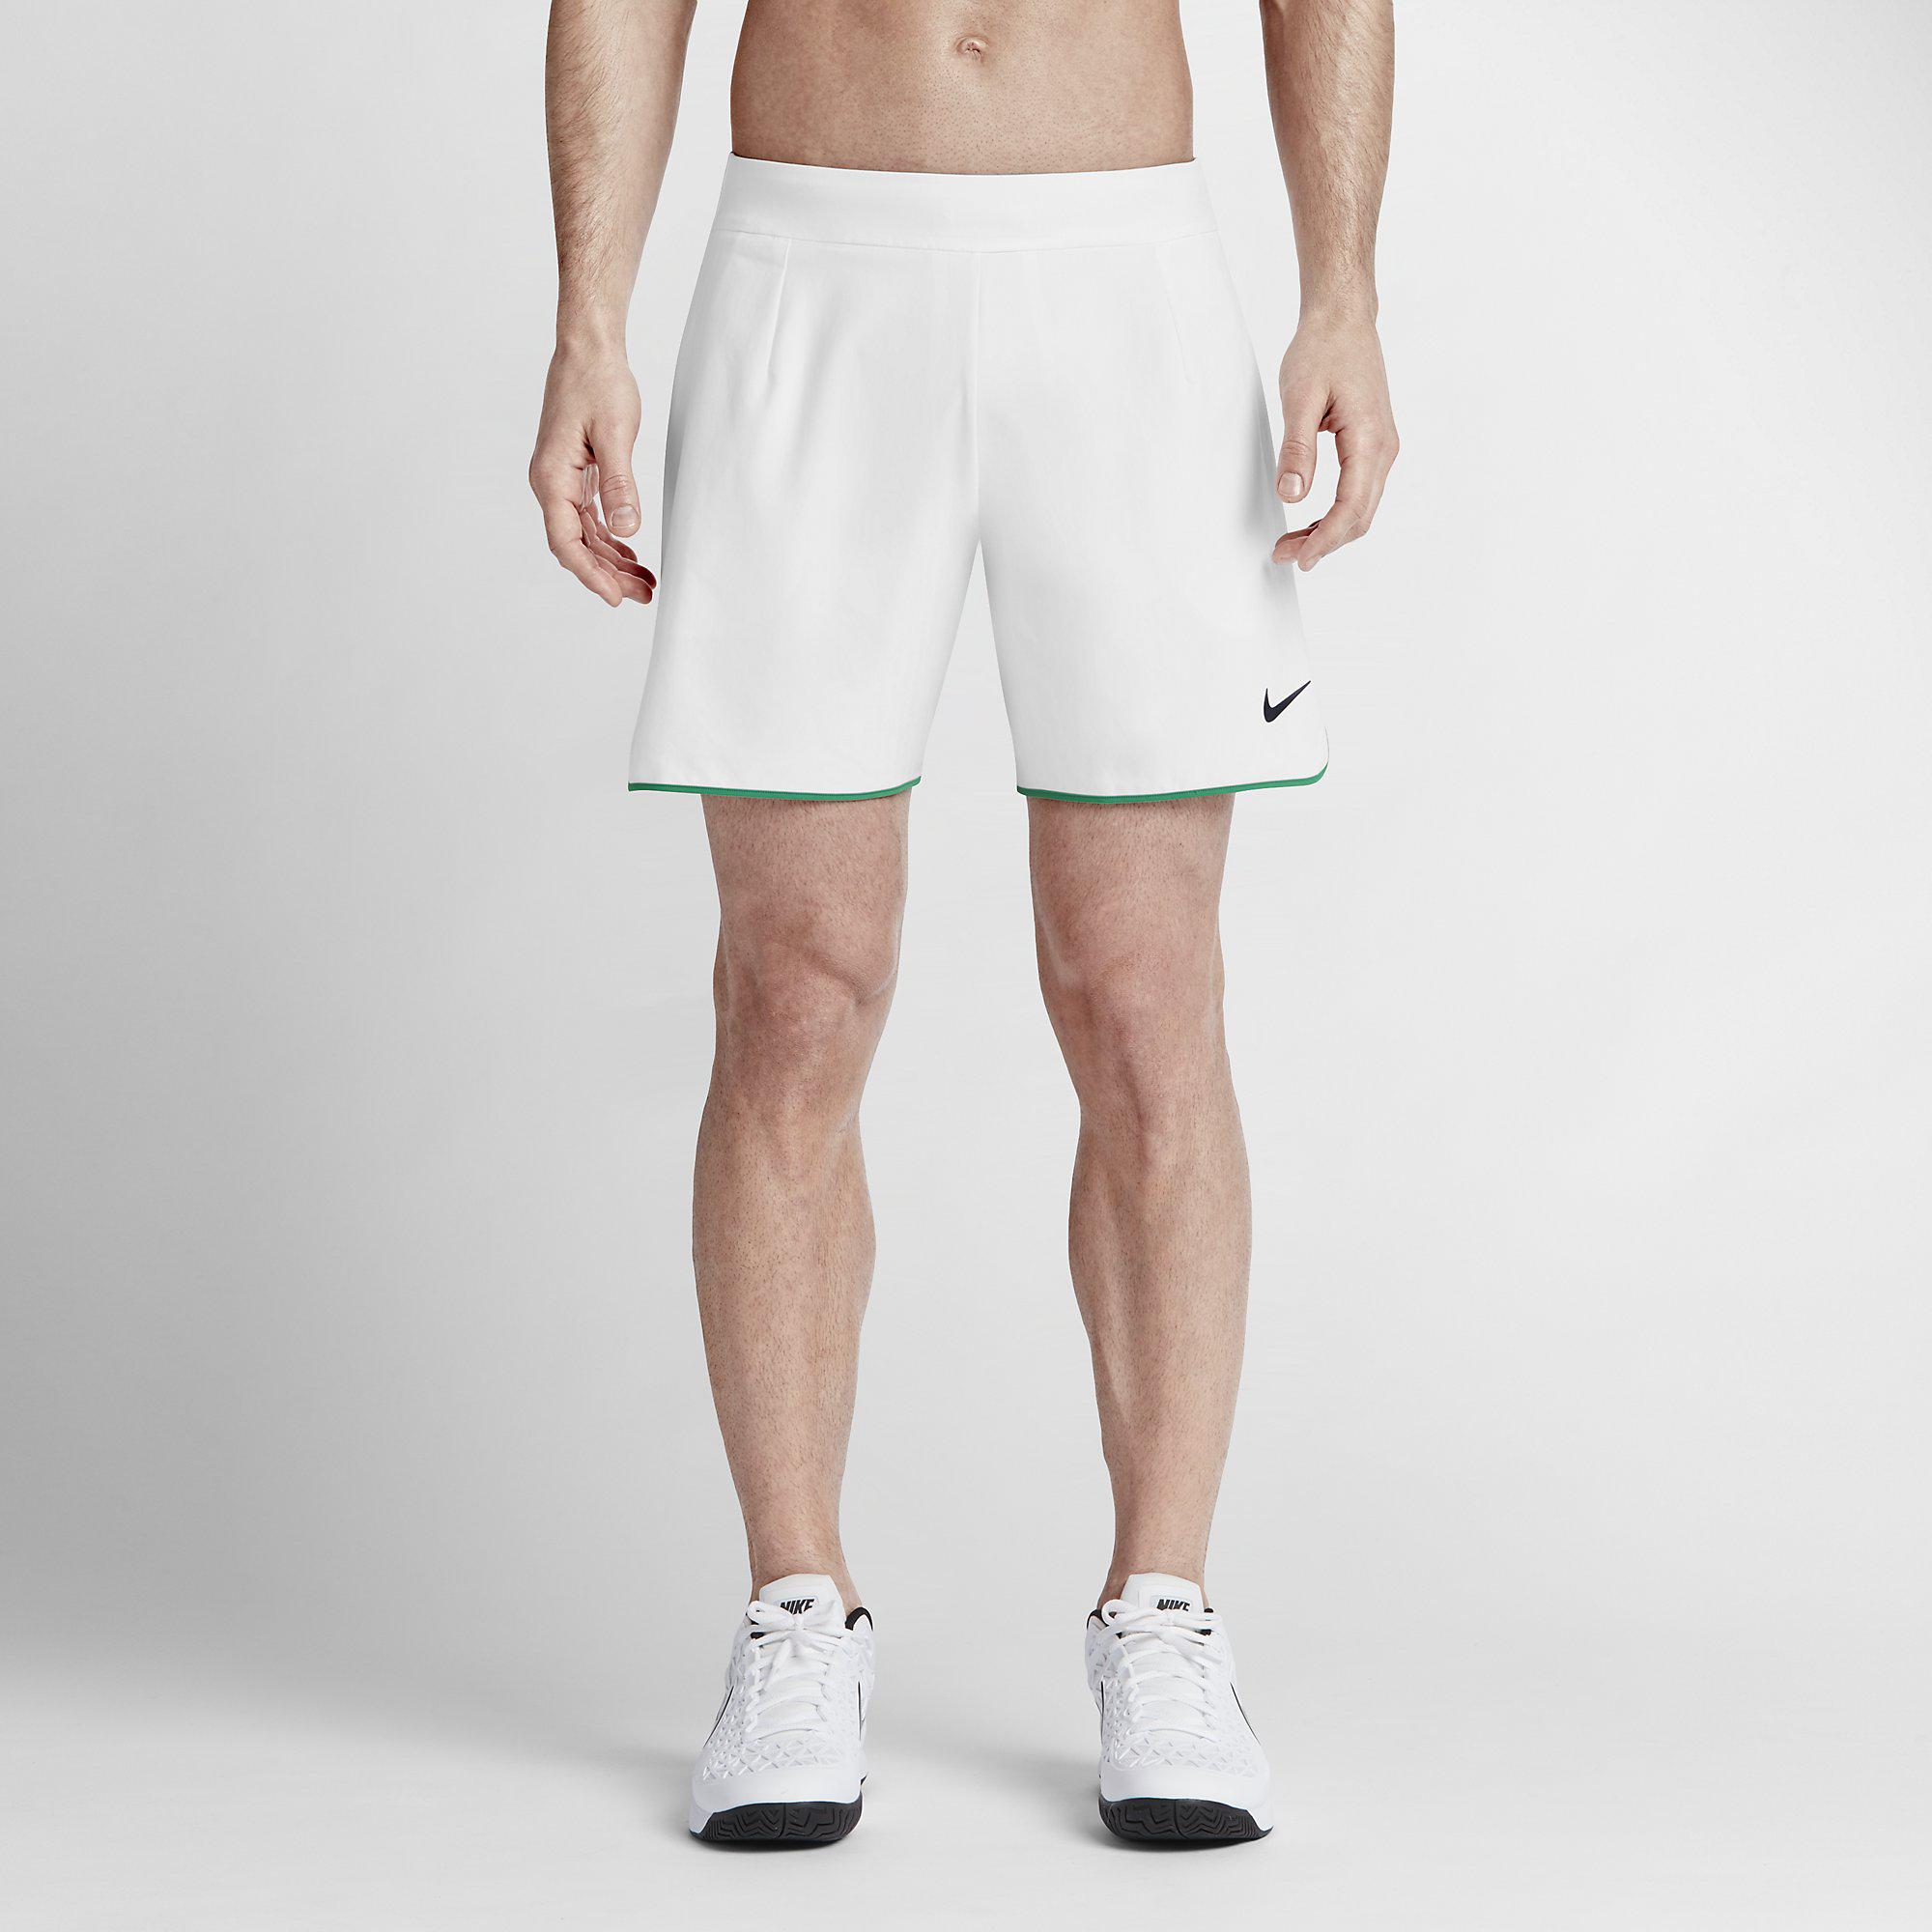 Nike Mens Premier Gladiator 7 Inch Shorts - White/Lucid Green ...